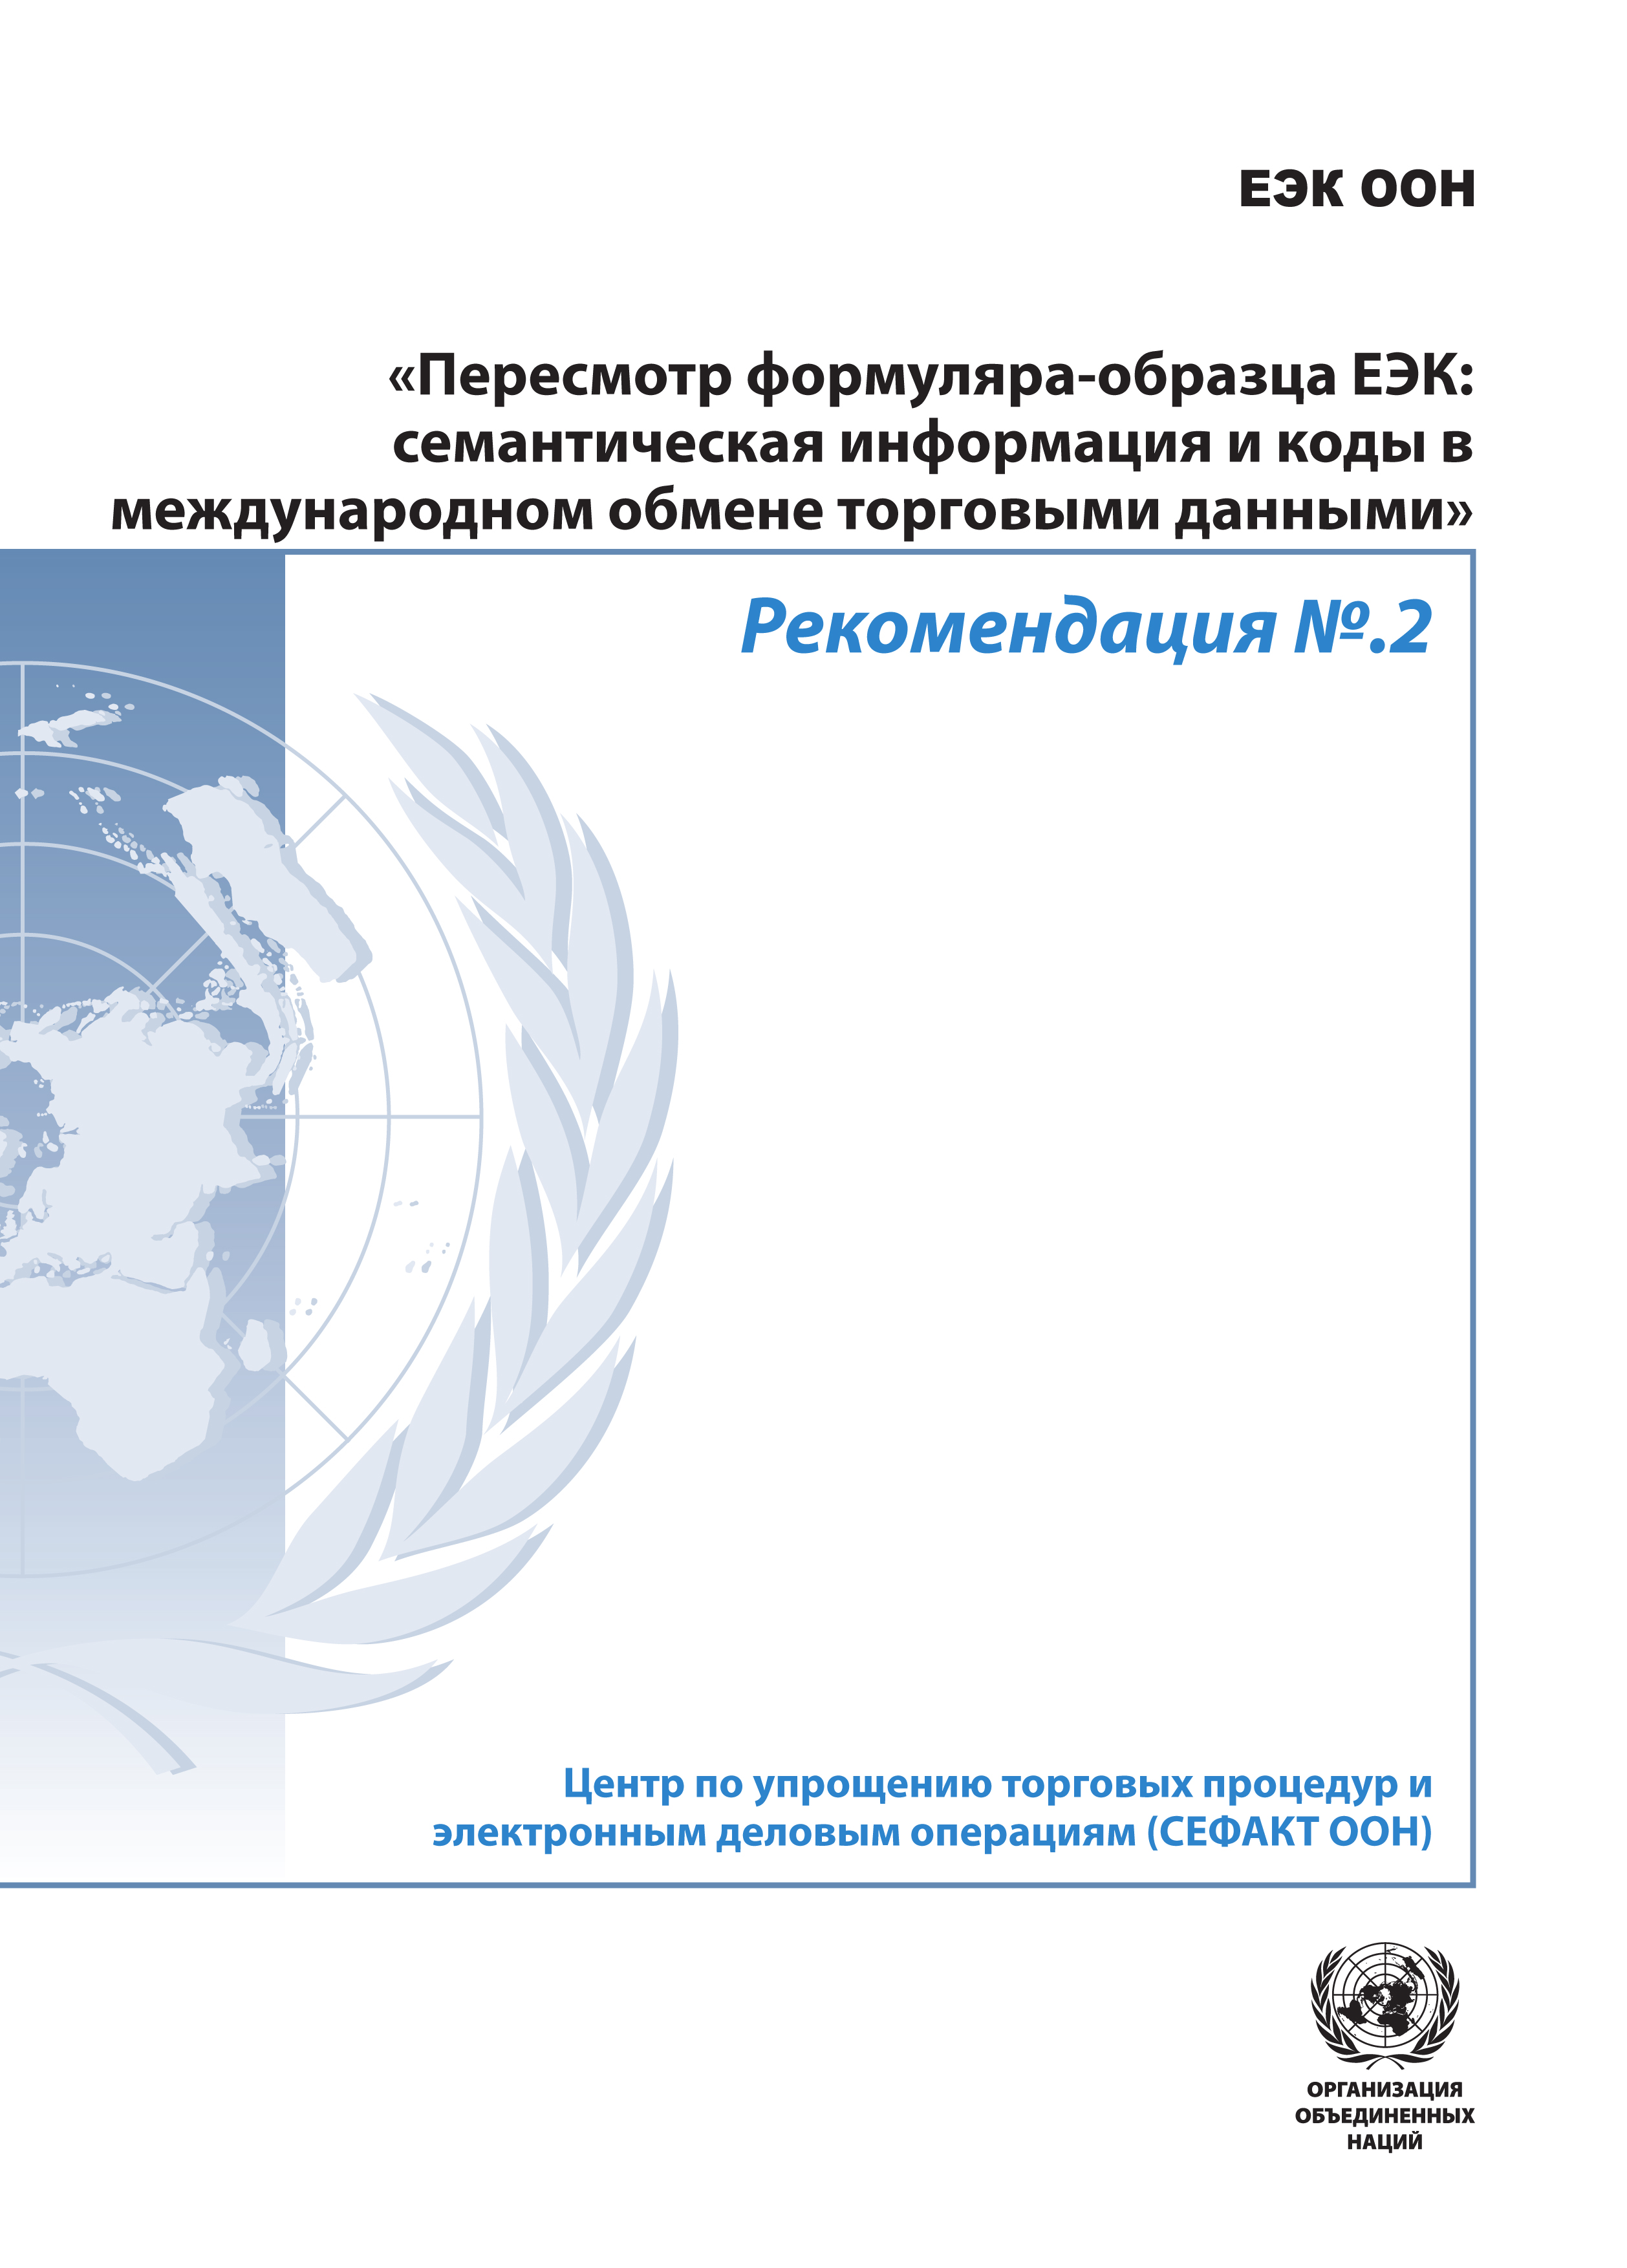 image of Руководящие положения к Рекомендации № 2 «Семантическая информация и коды в сфере международного обмена торговыми данными»